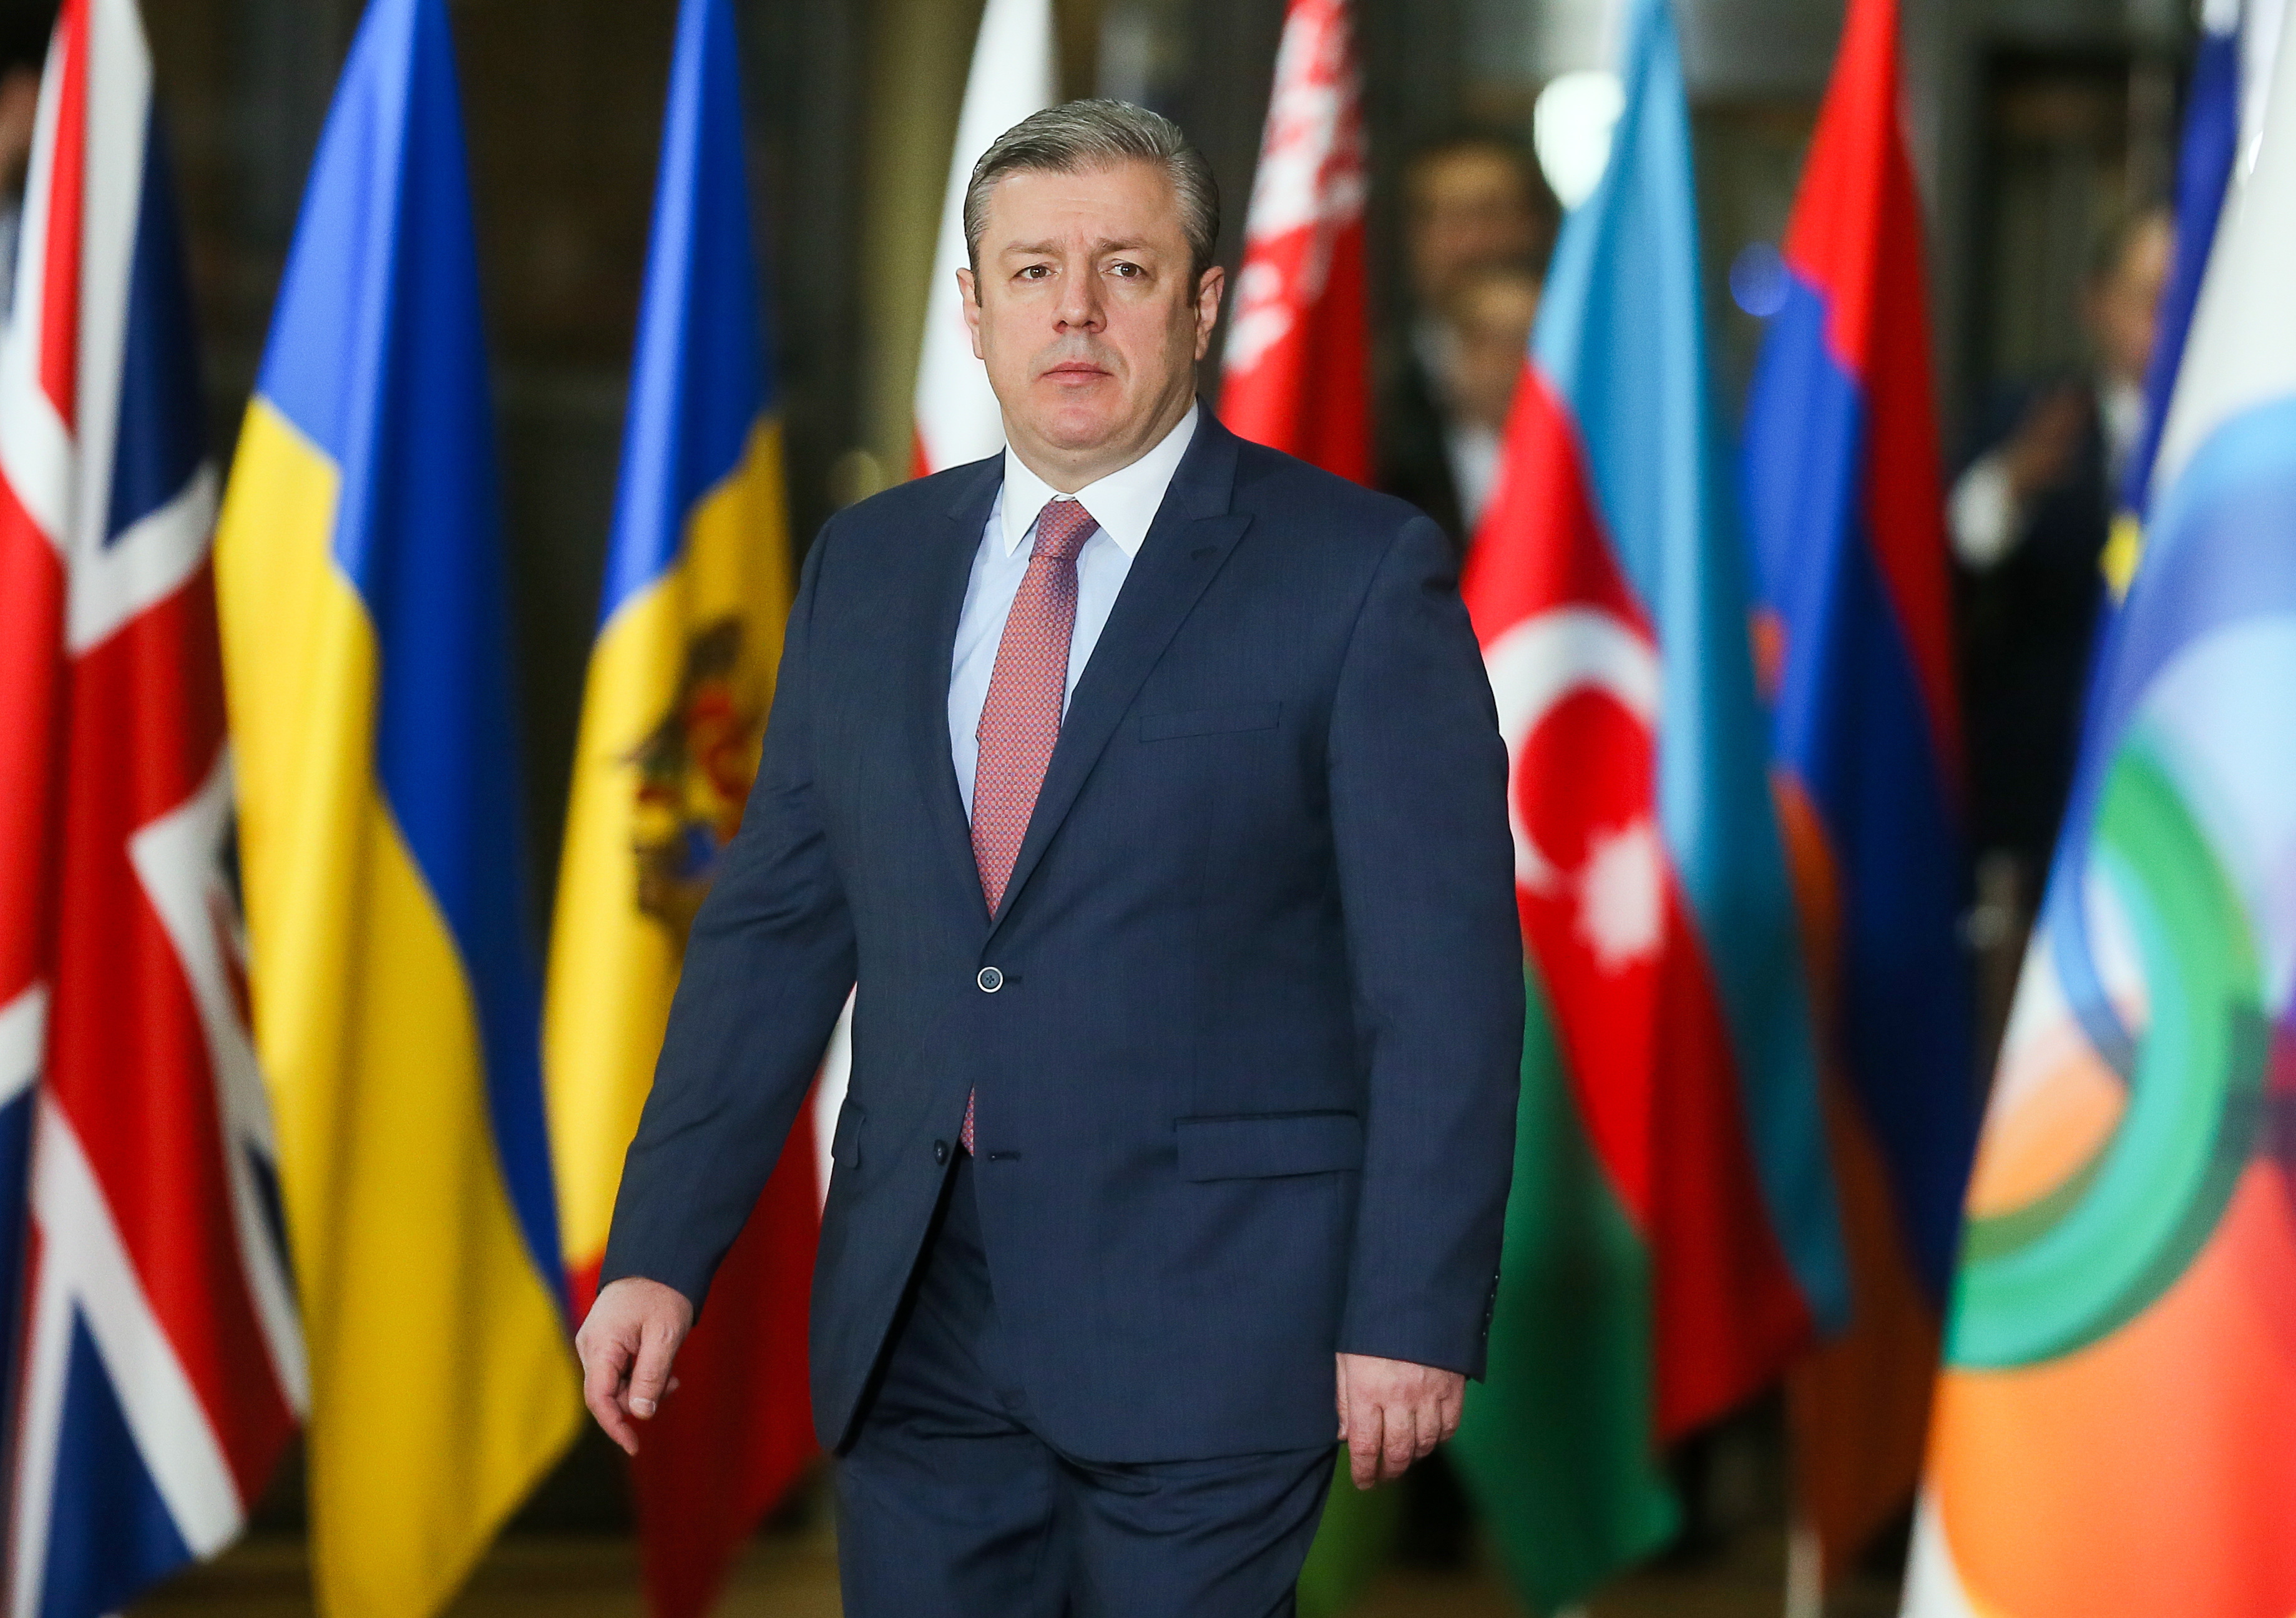 Γεωργία: Παραιτήθηκε ο πρωθυπουργός Γκιόργκι Κβιρικασβίλι